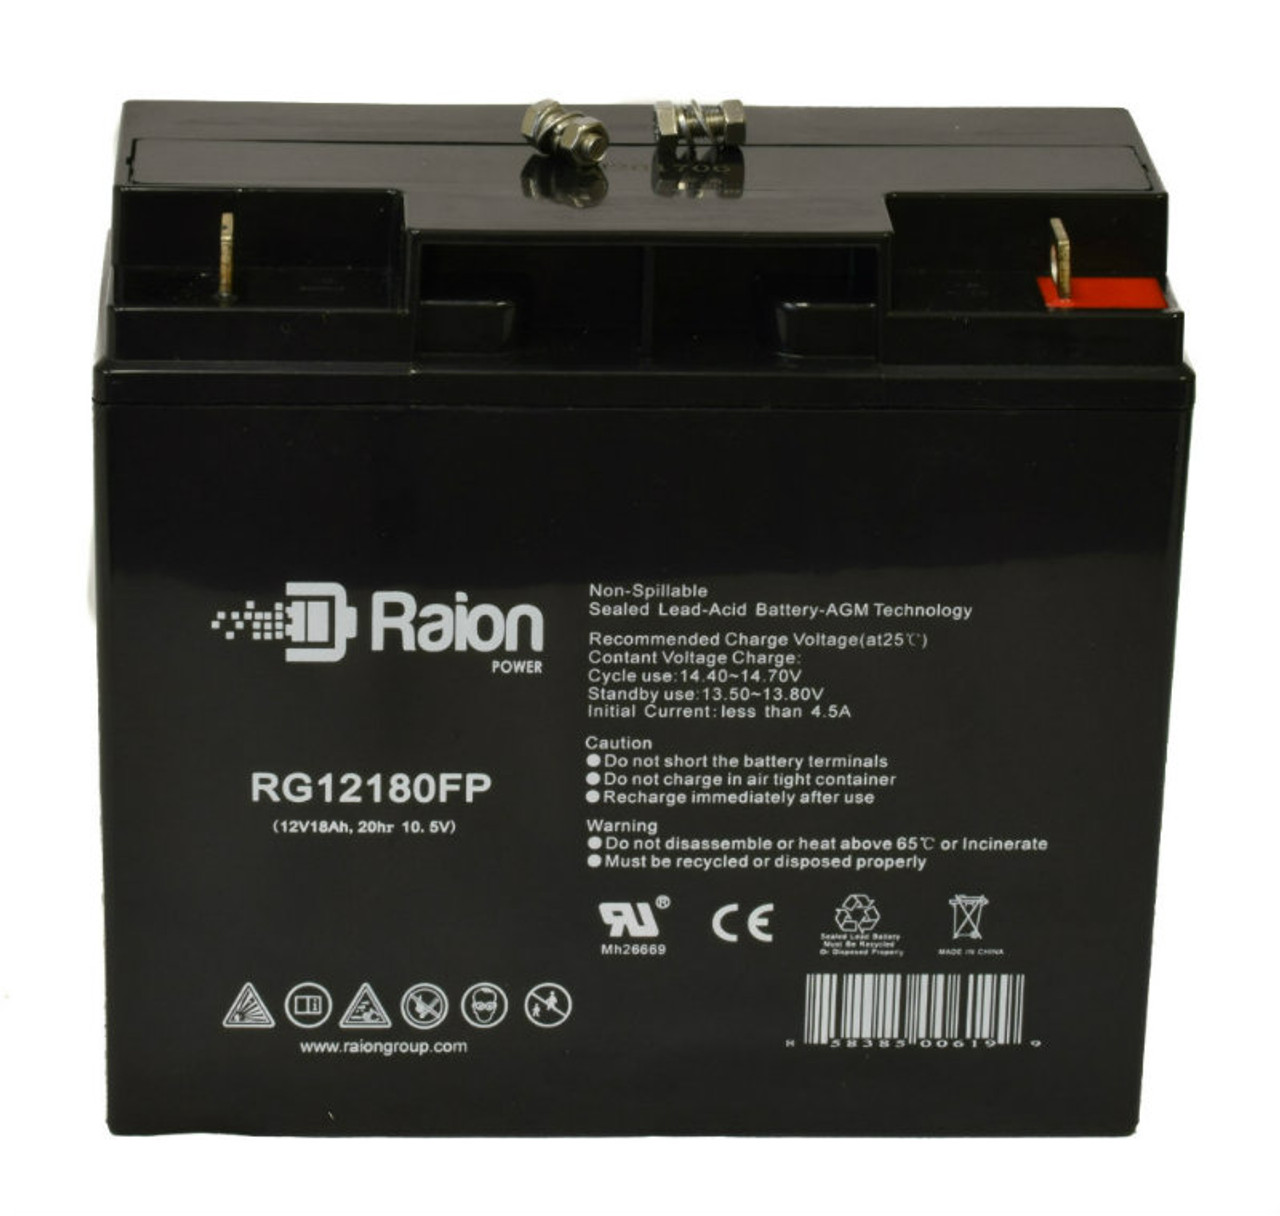 Raion Power RG12180FP 12V 18Ah Lead Acid Battery for GP DC20-12